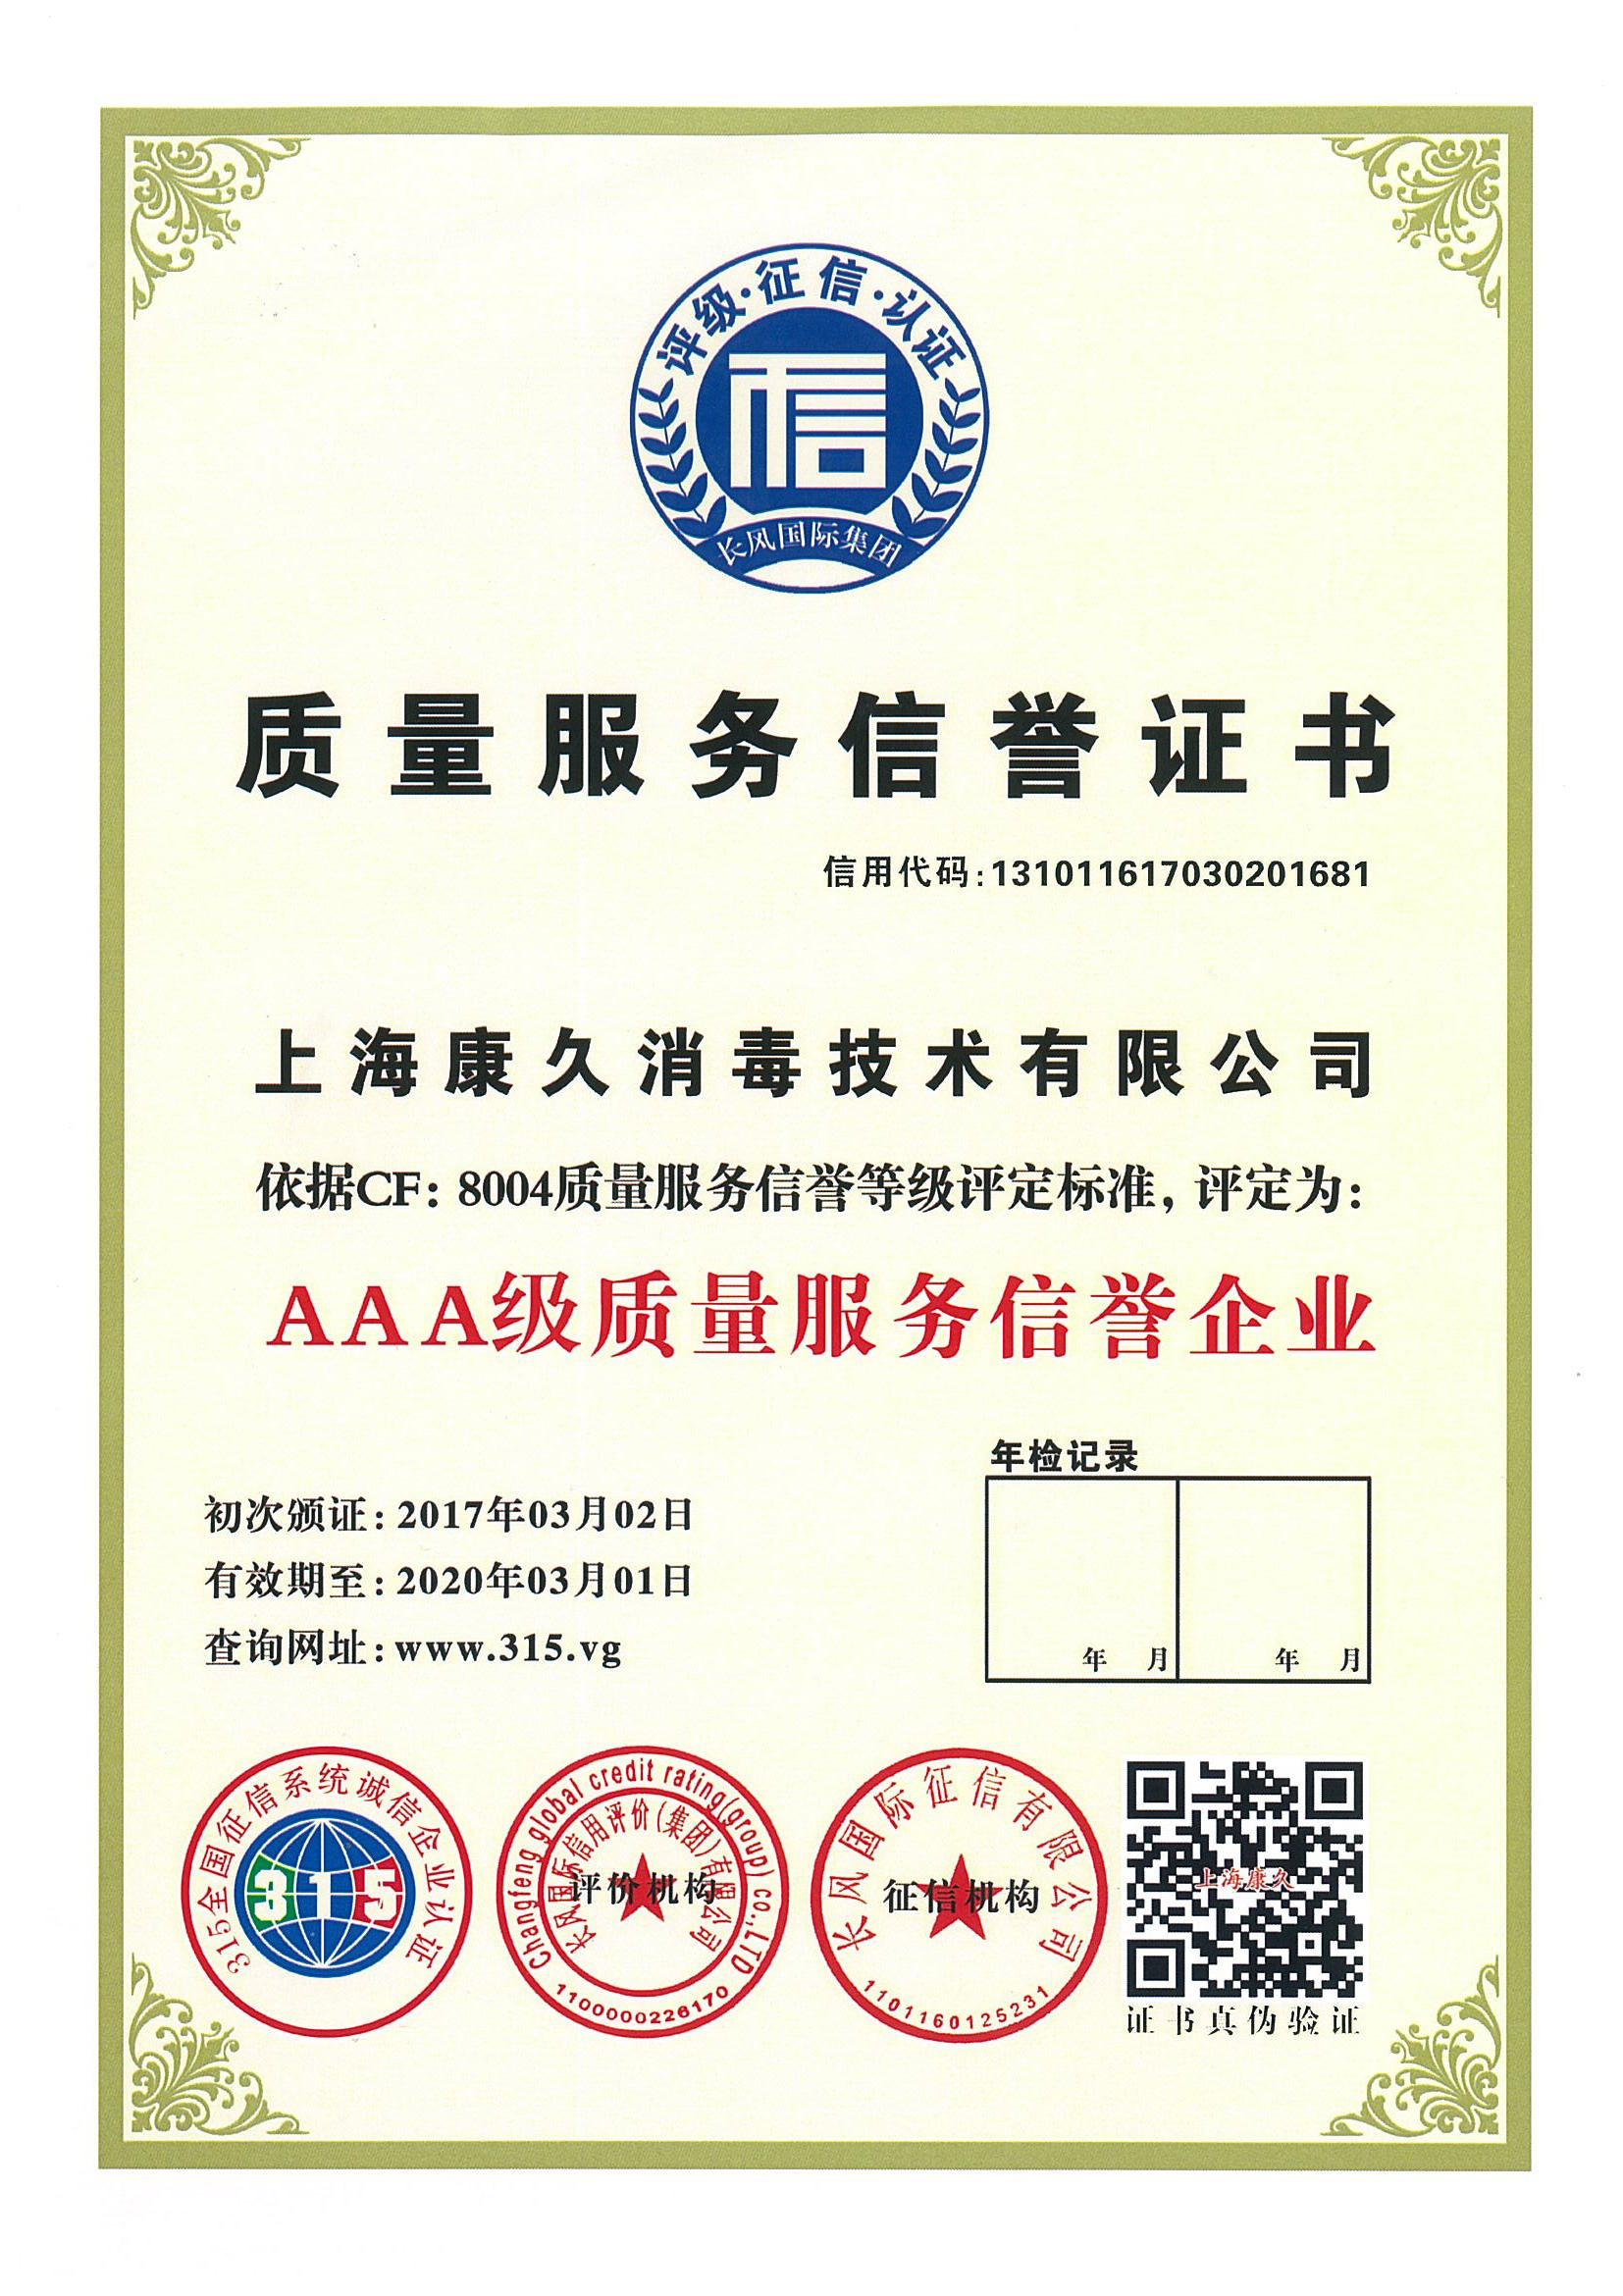 “漳州质量服务信誉证书